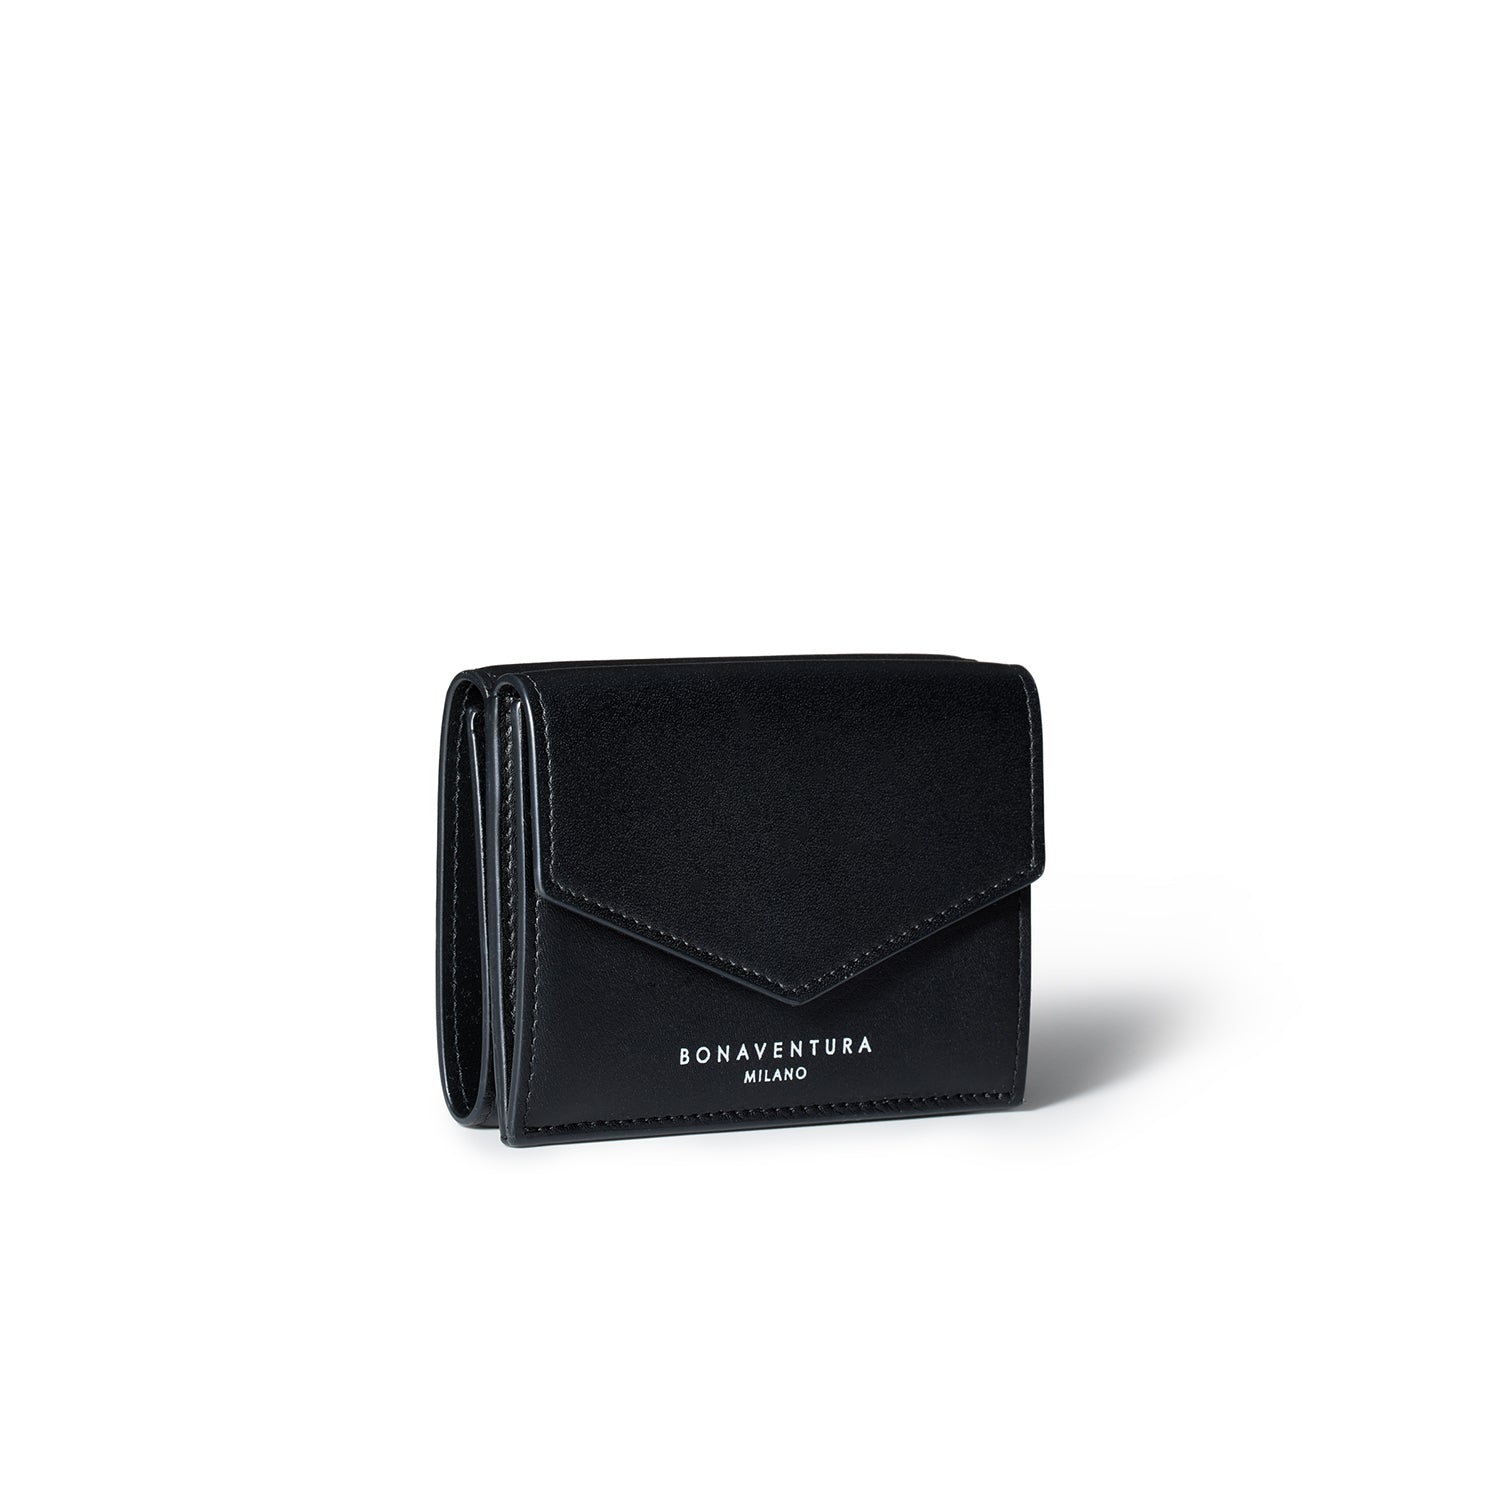 上質なレザーの三つ折り財布 – イタリア(ミラノ)発の高級革製品の通販